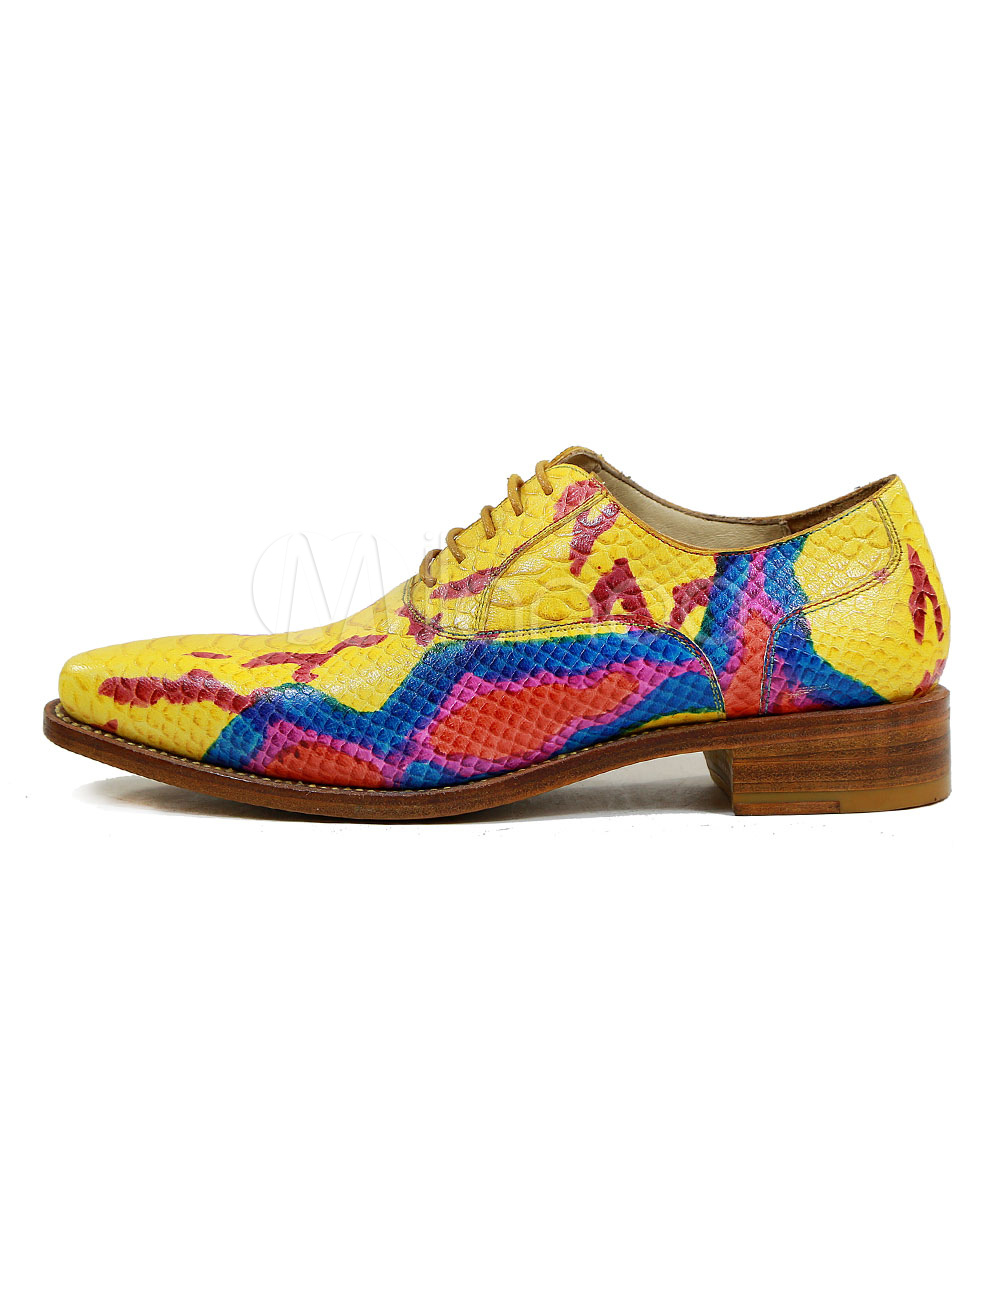 colorful mens dress shoes